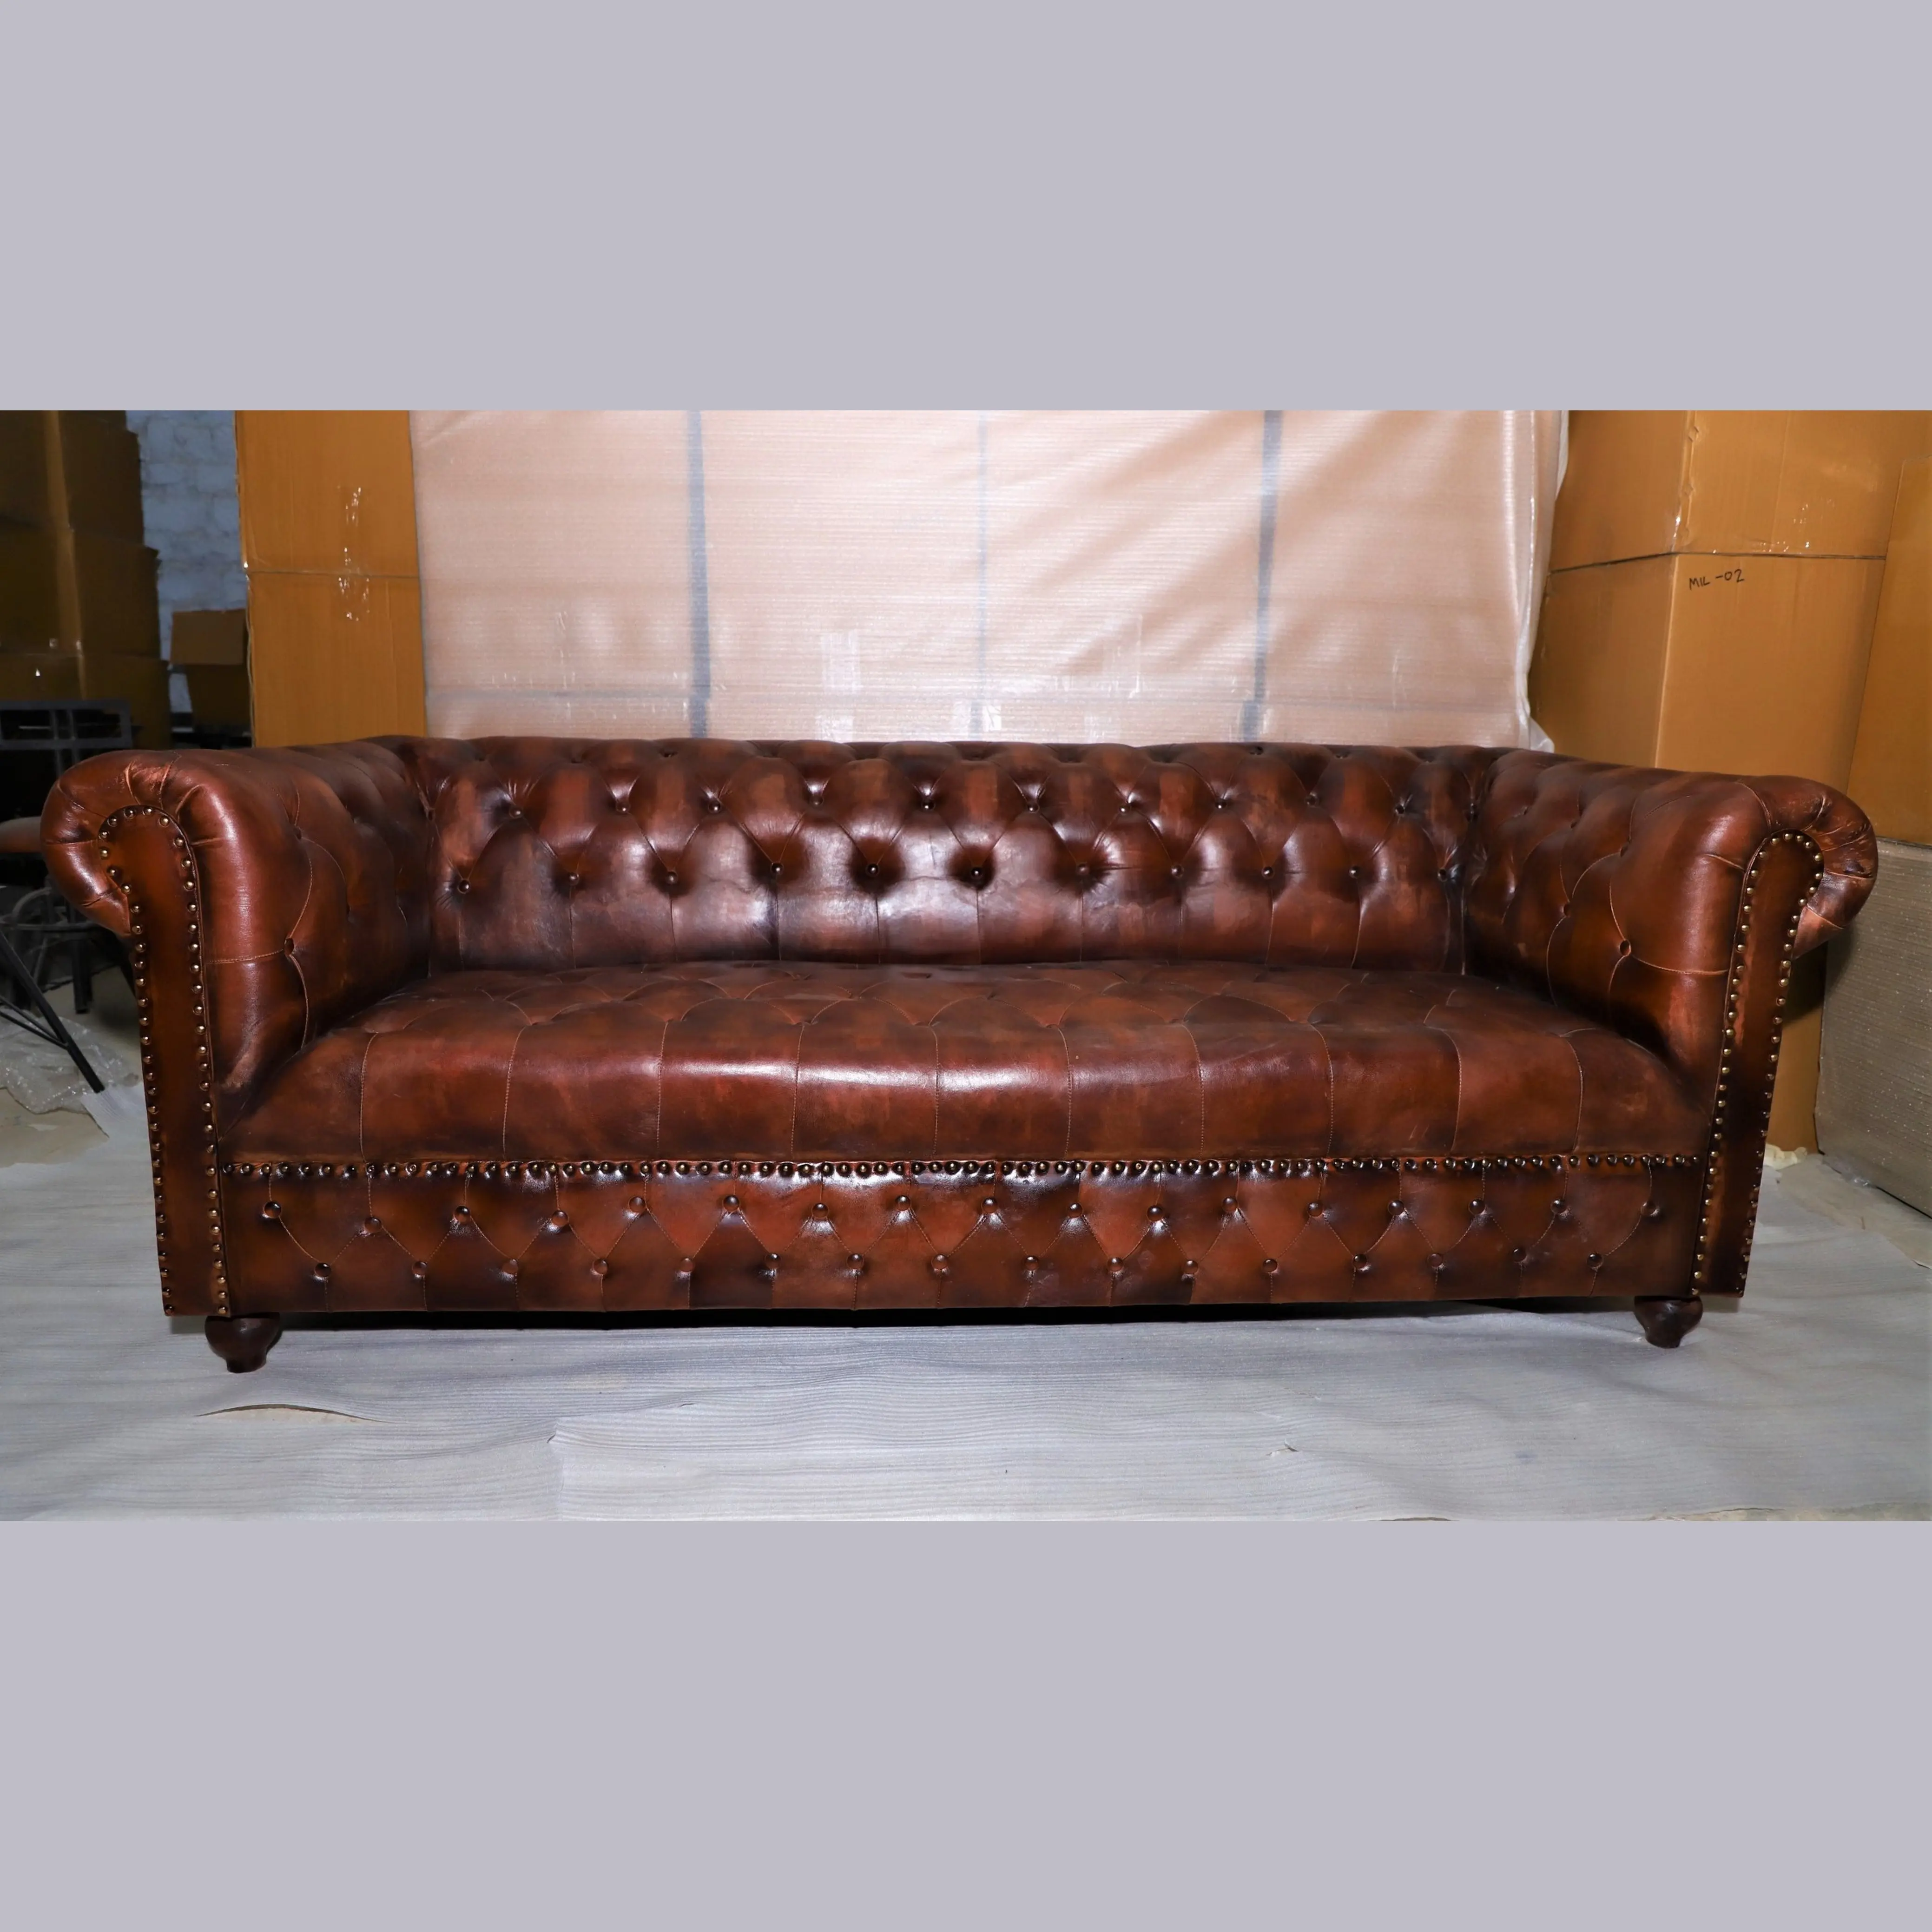 ORIGINAL de la sala de estar de cuero sofá CHESTERFIELD genuino sofá de cuero